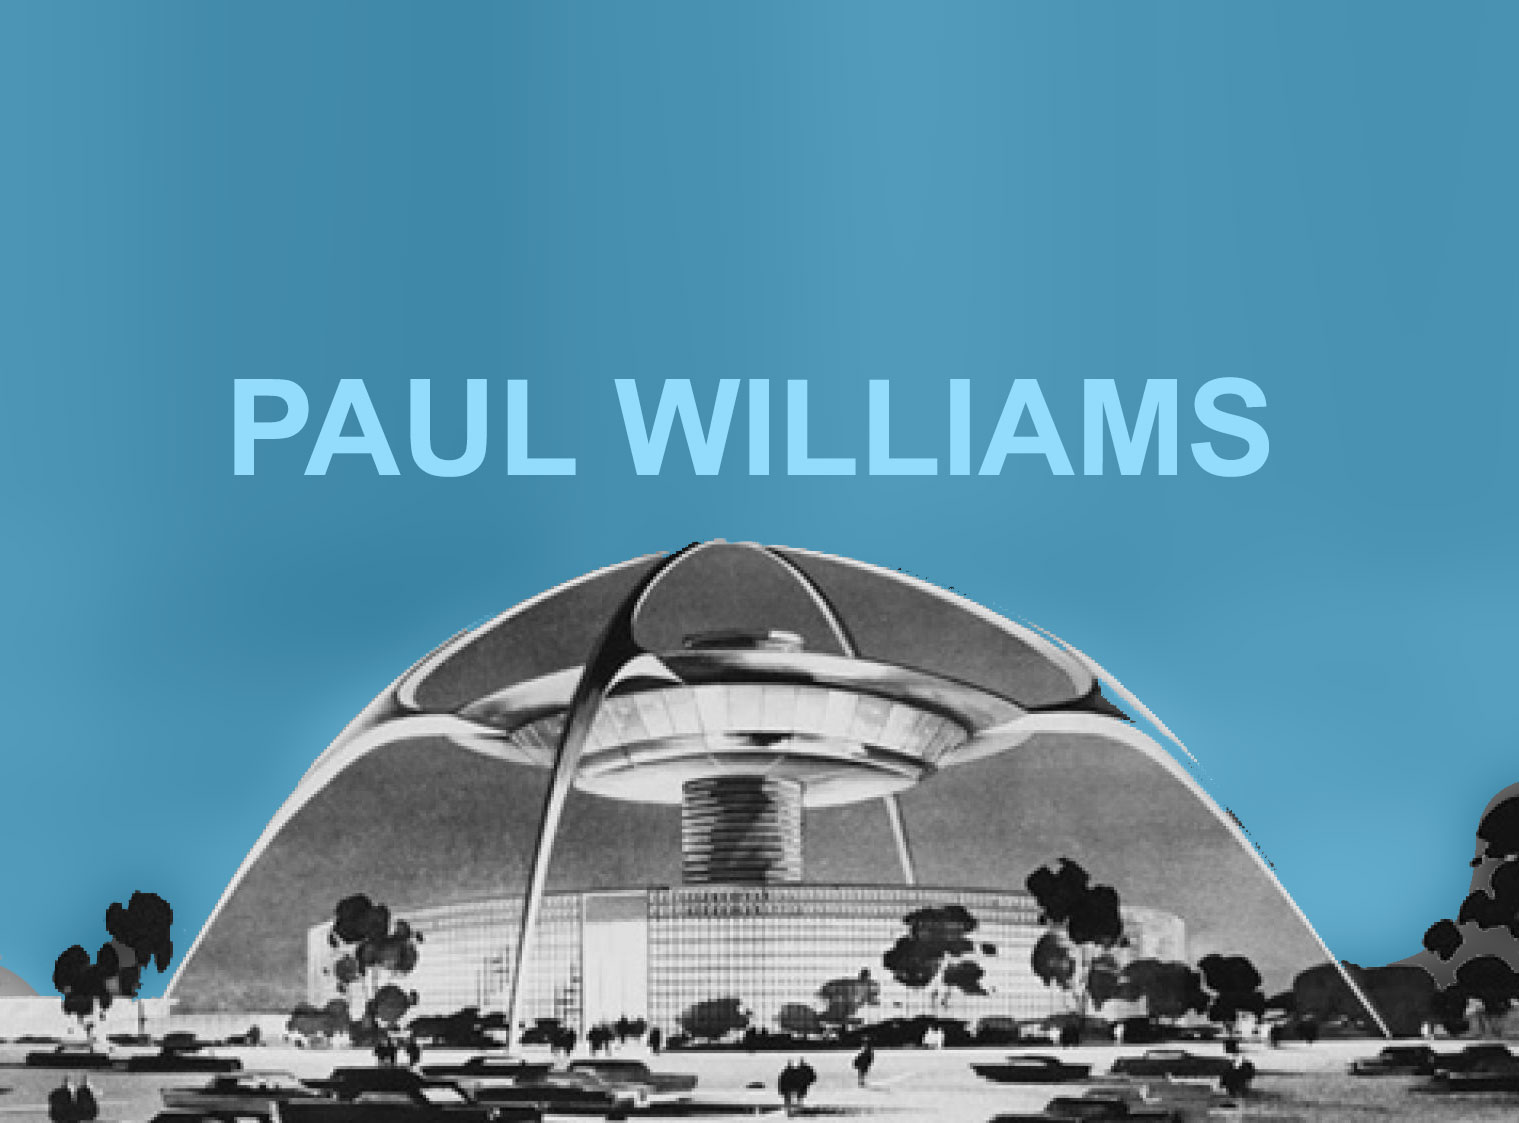 Paul Williams